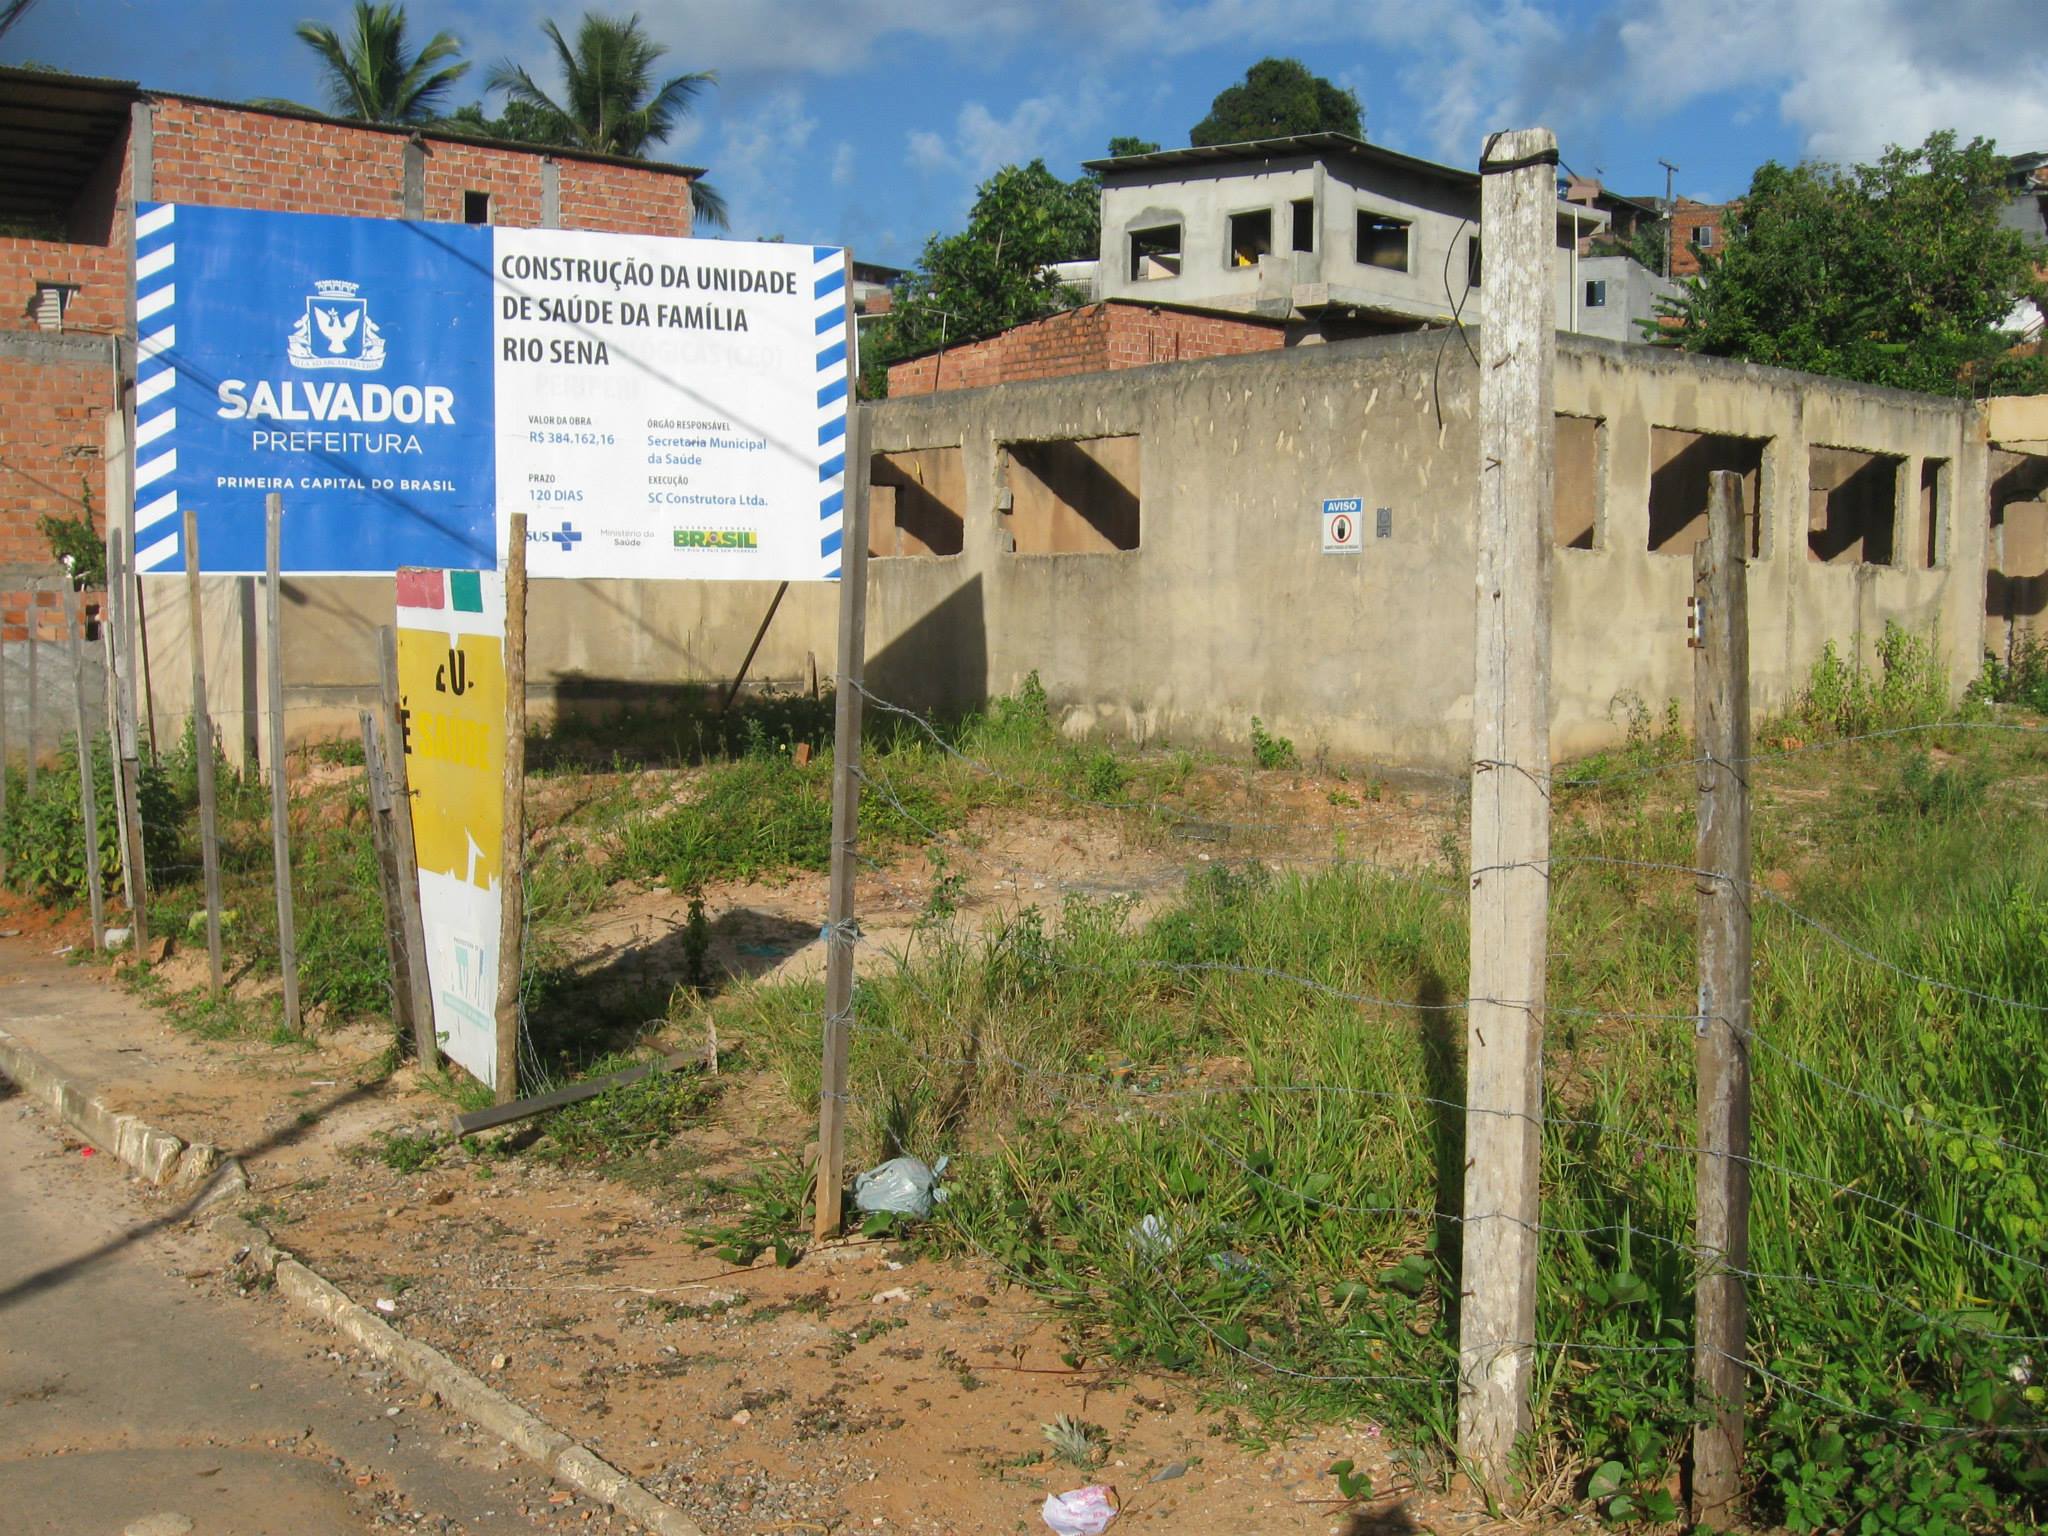 Eterna construção da Unidade de Saúde da Família do Rio Sena